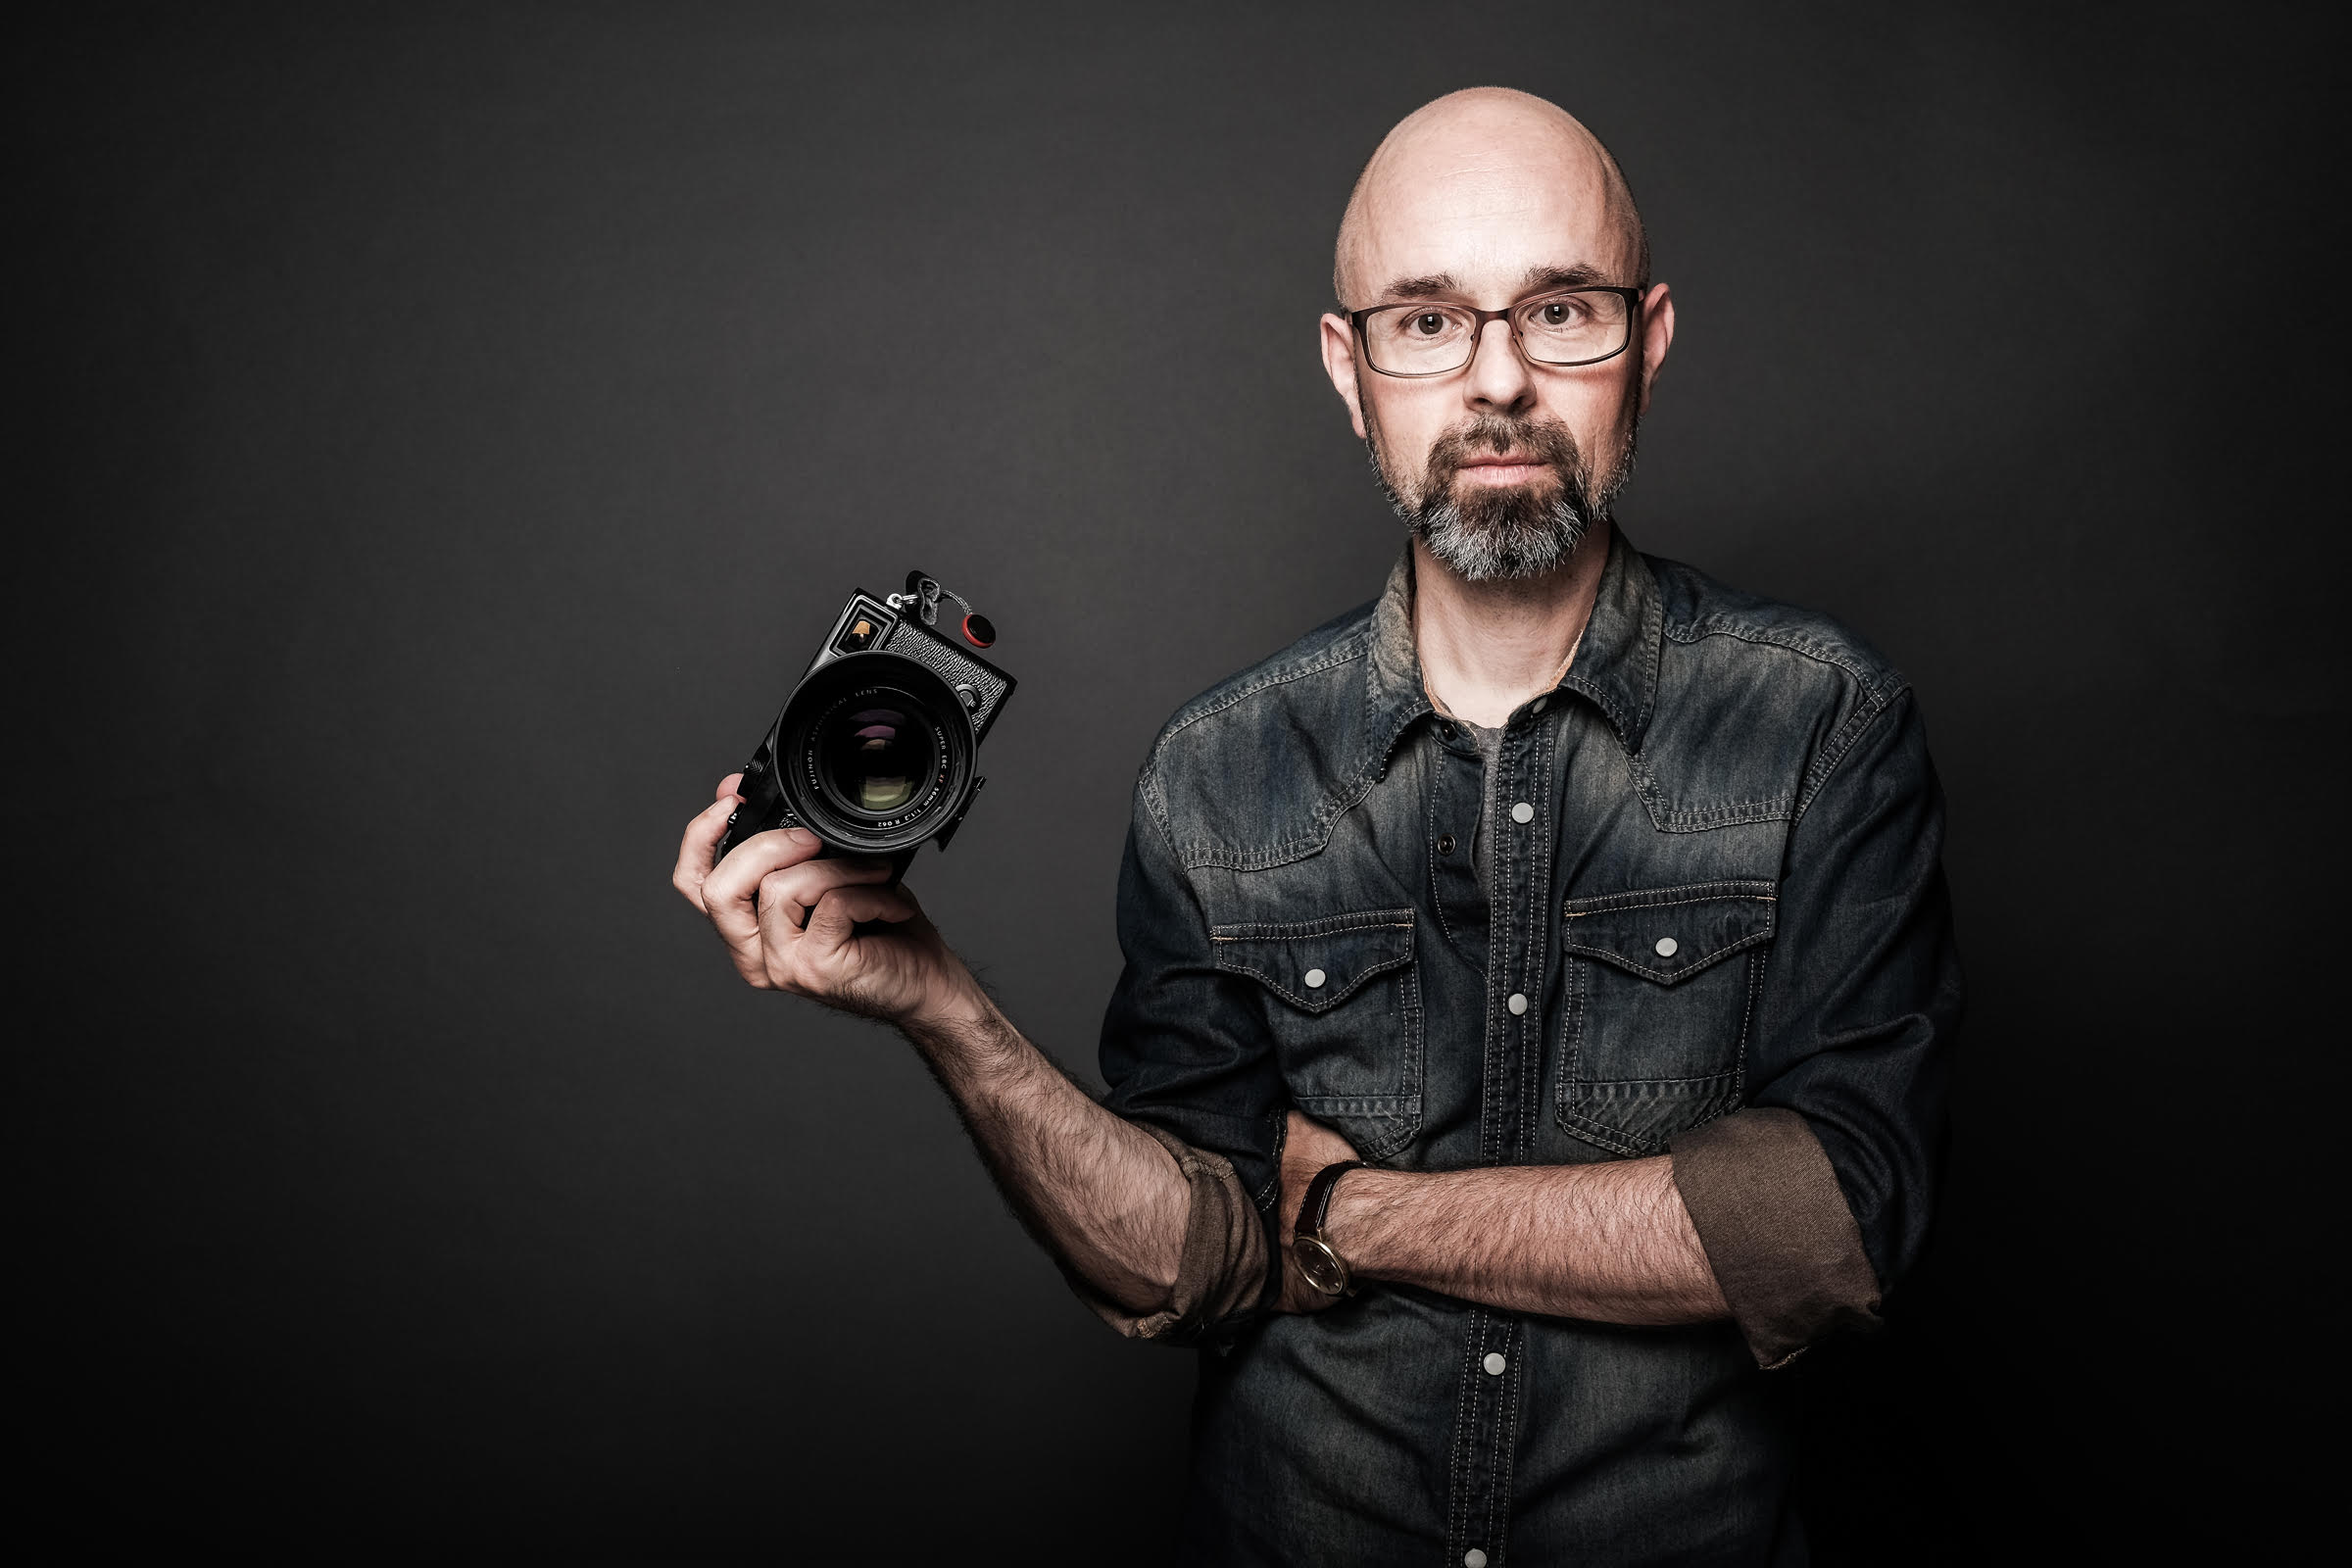 Portrait des Fotografen und FUJIFILMSchool Dozenten Peter Fauland